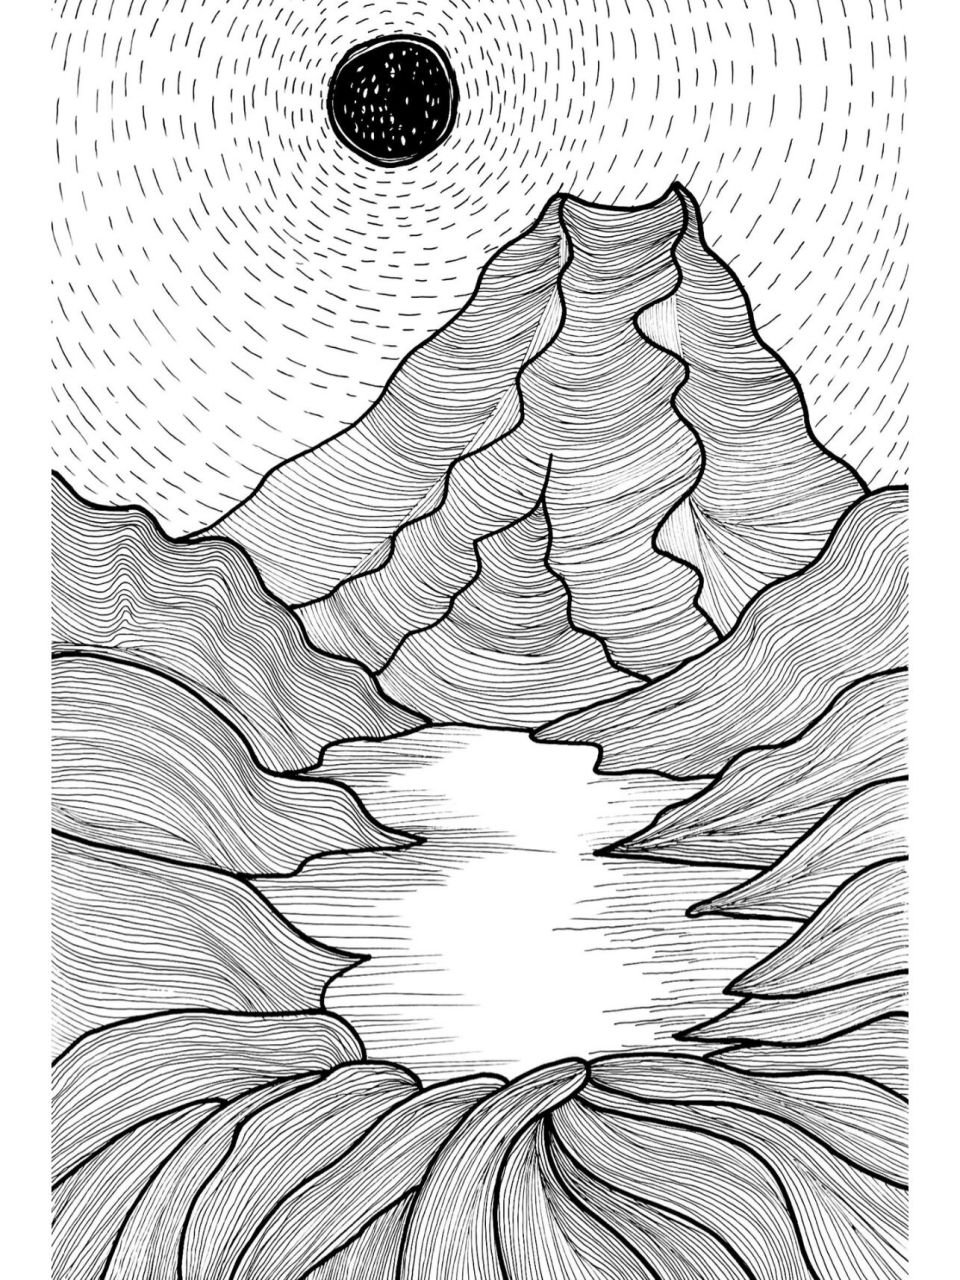 月光下的山峦黑白装饰画(原创)附步骤 日常线条绘画练习 控笔训练:山